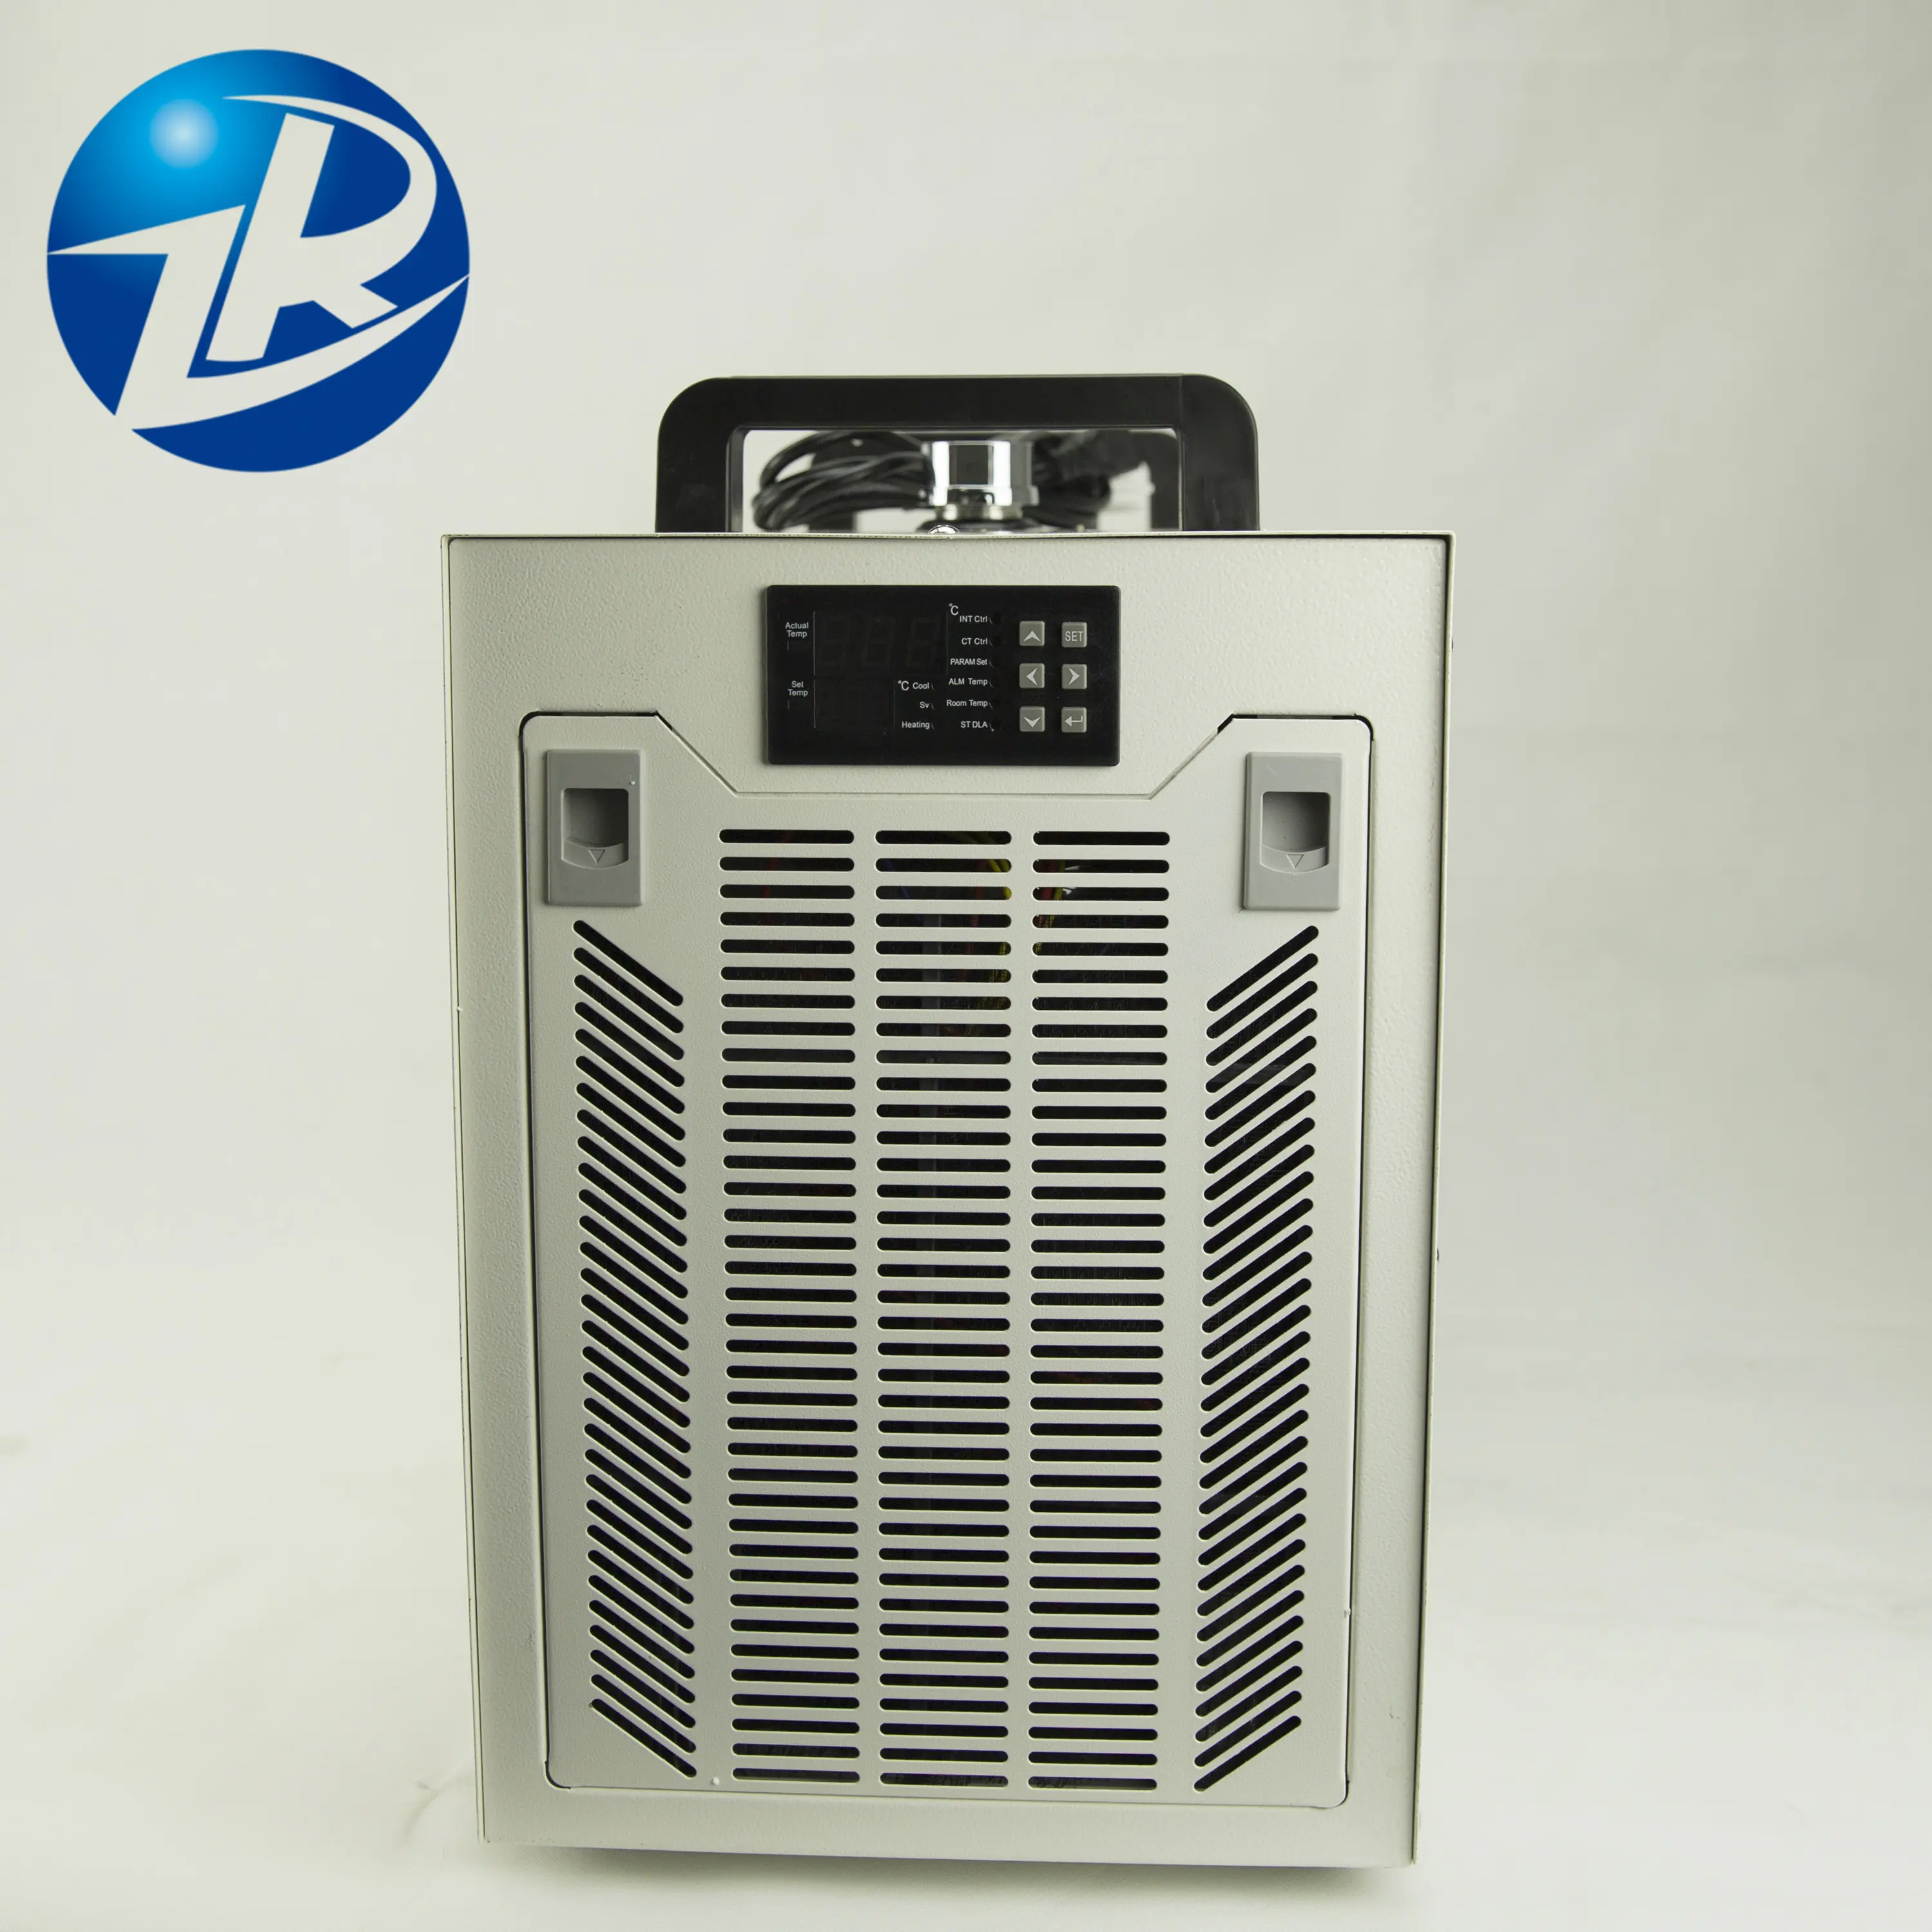 SHZR 3000CW 5000CW 5200CW 냉각기가 물 냉각 미니 냉각기 물 나사 냉각